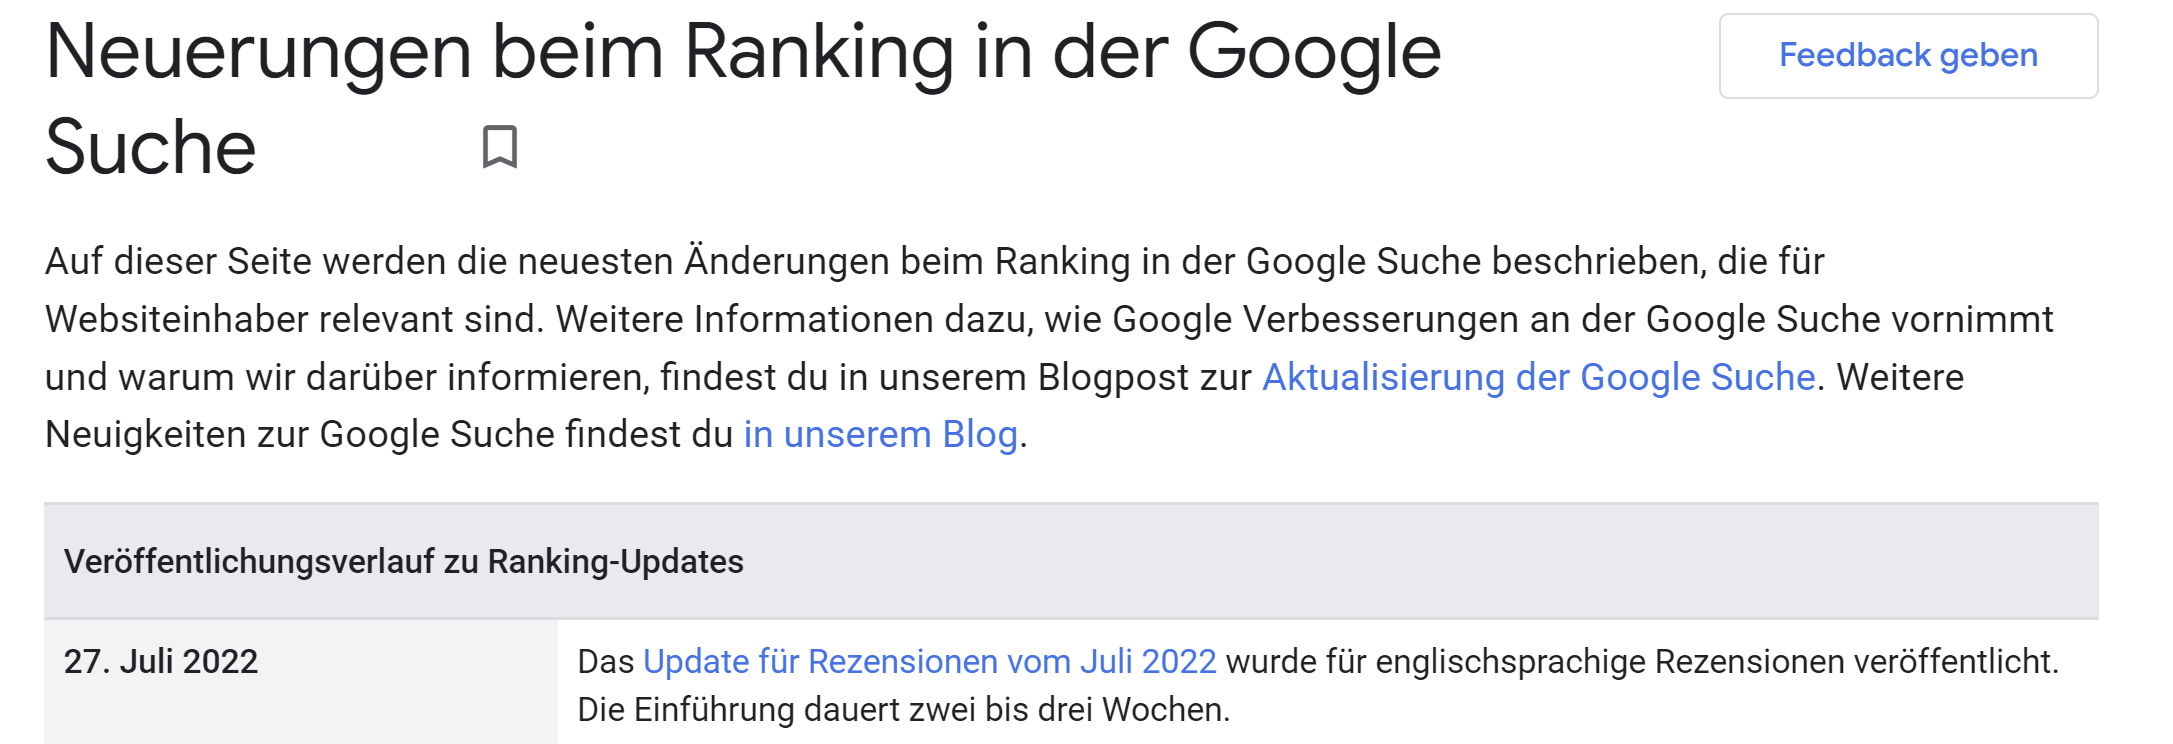 Google Product Reviews Update vom Juli 2022 auf deutschsprachiger Version der Update-Übersicht noch nicht als beendet gekennzeichnet